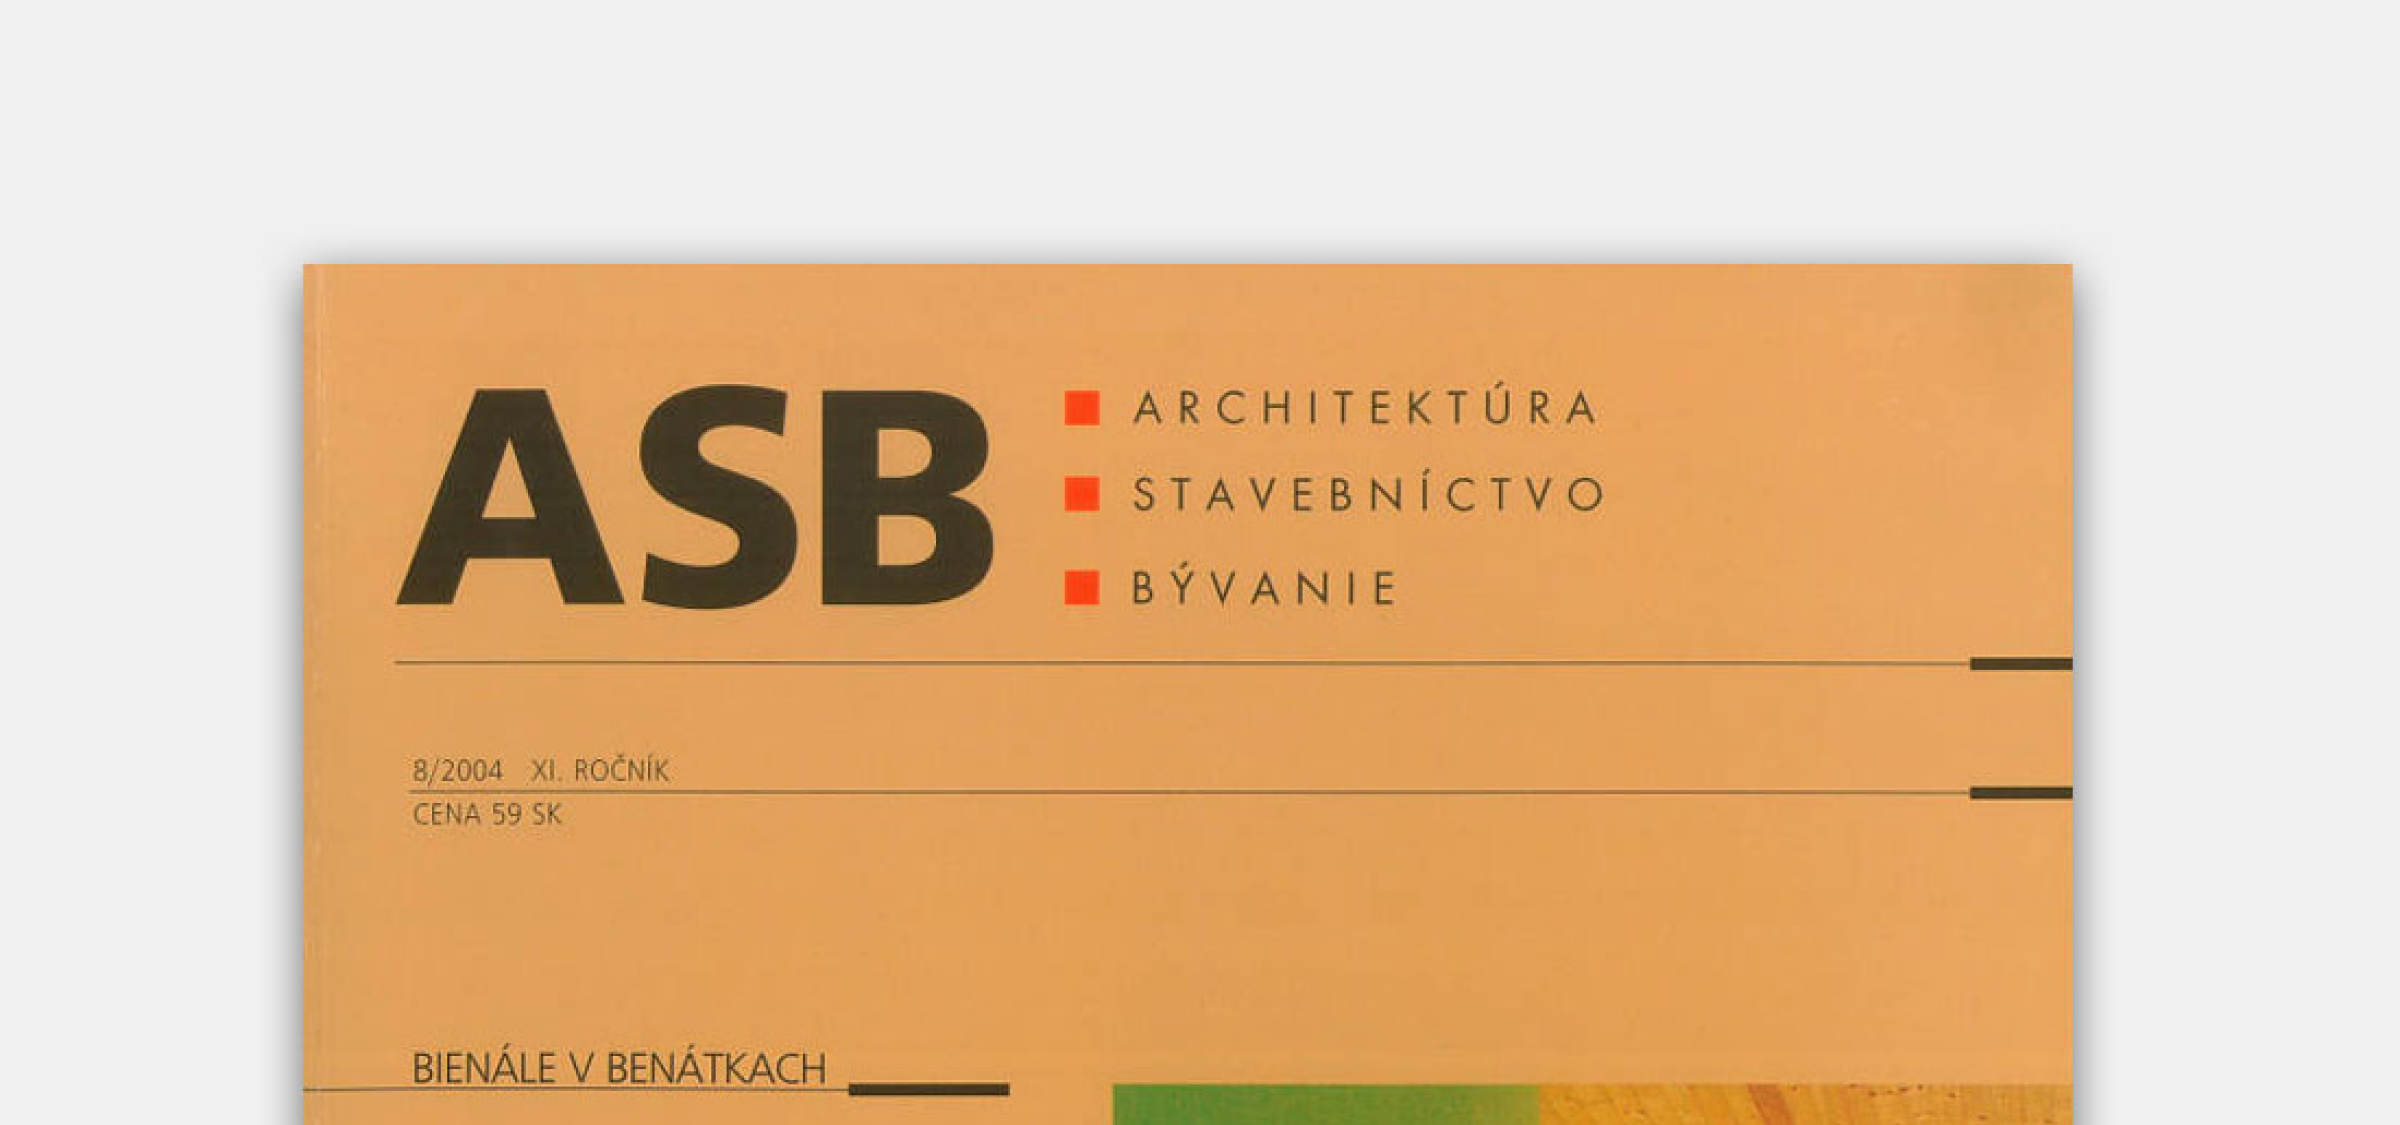 Interview for ASB | News | Atrium Architekti